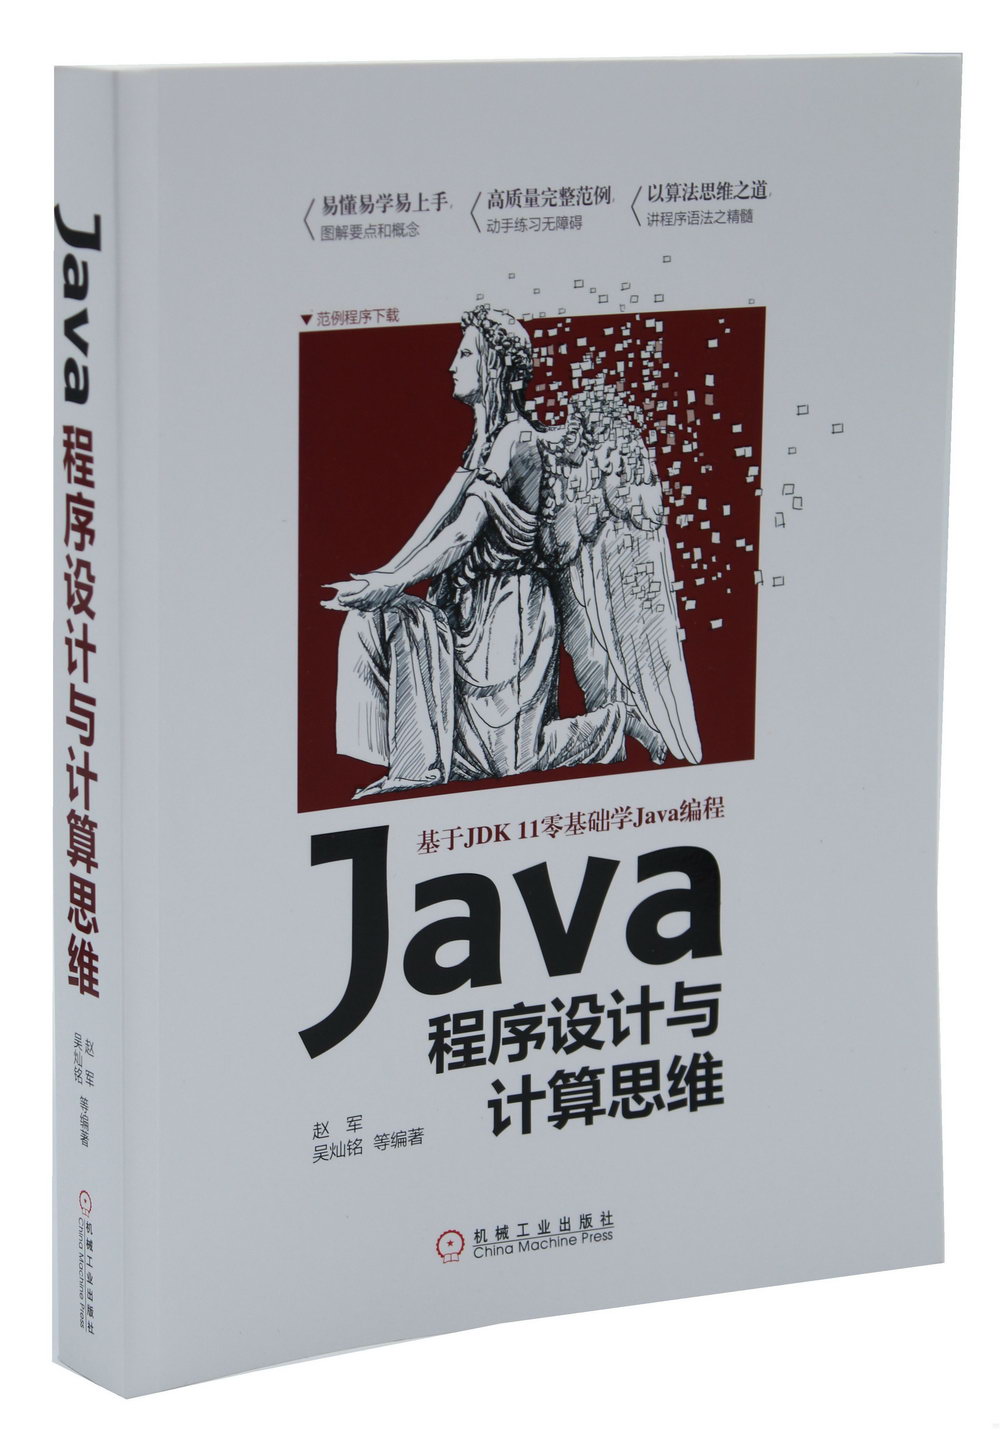 Java程序設計與計算思維